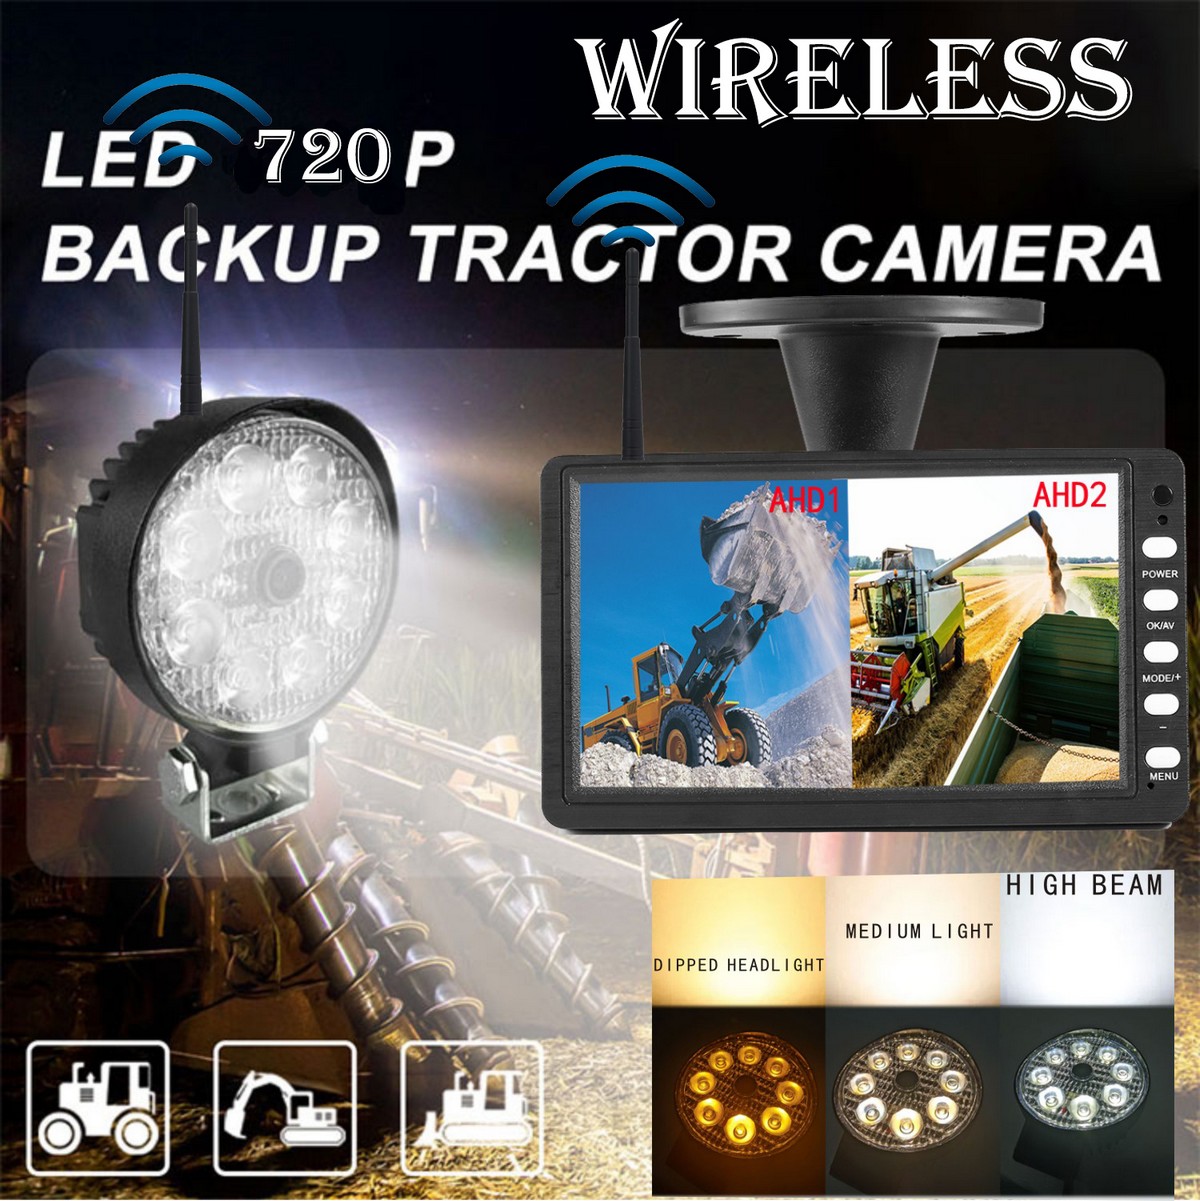 バックアップセット - 強力な白色LEDライトと多くの機能を備えたWifiカメラ